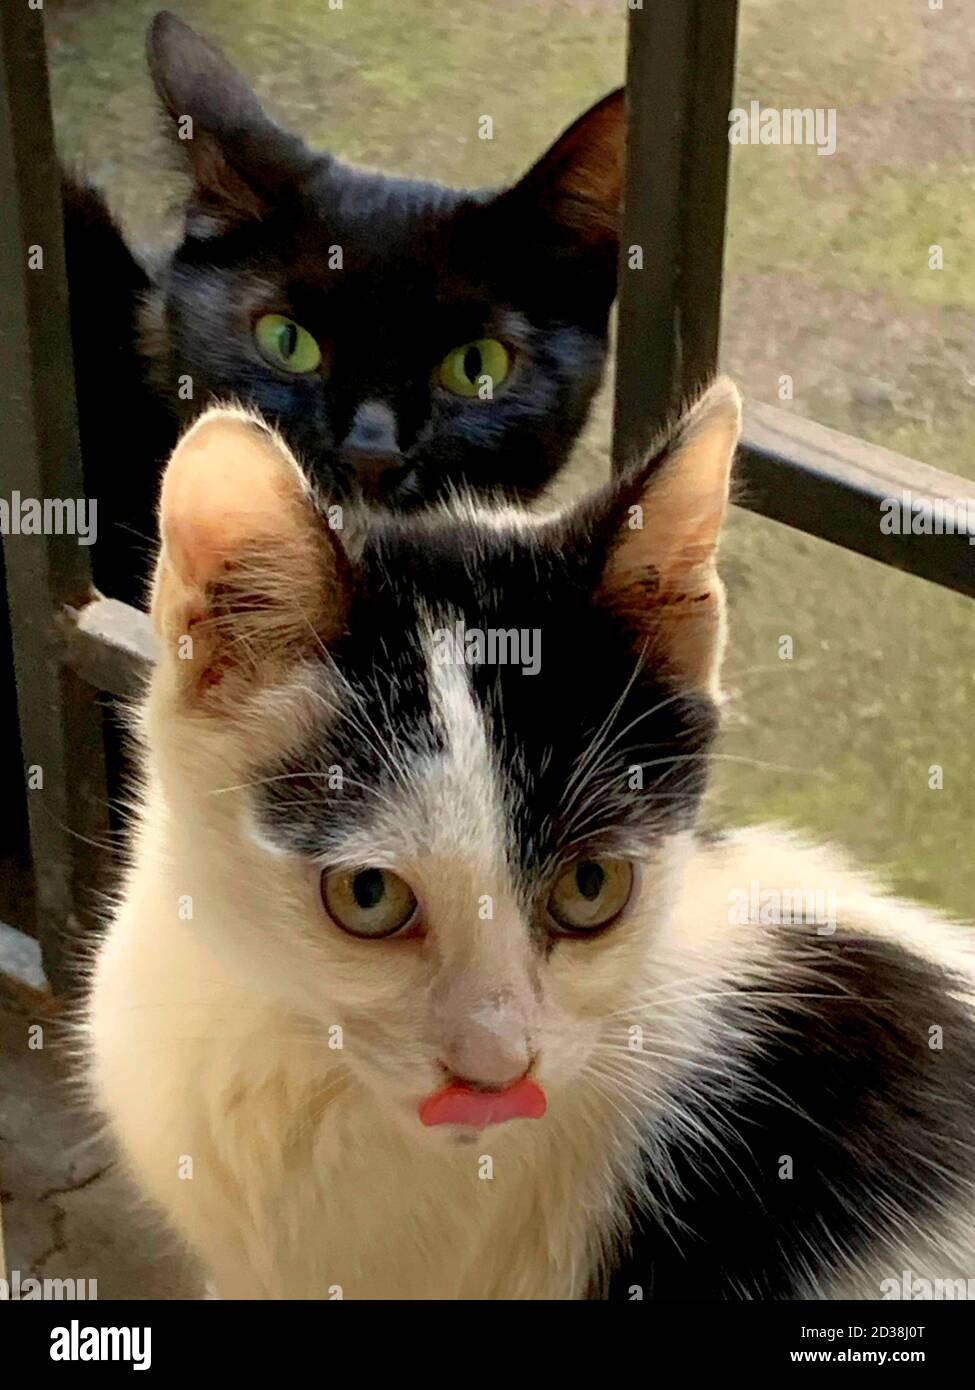 Zwei lustige obdachlose Katzen, schwarze Katzenmutter mit grünen Augen und kleine weiße graue Kätzchen ragten aus seiner Zunge. Stockfoto